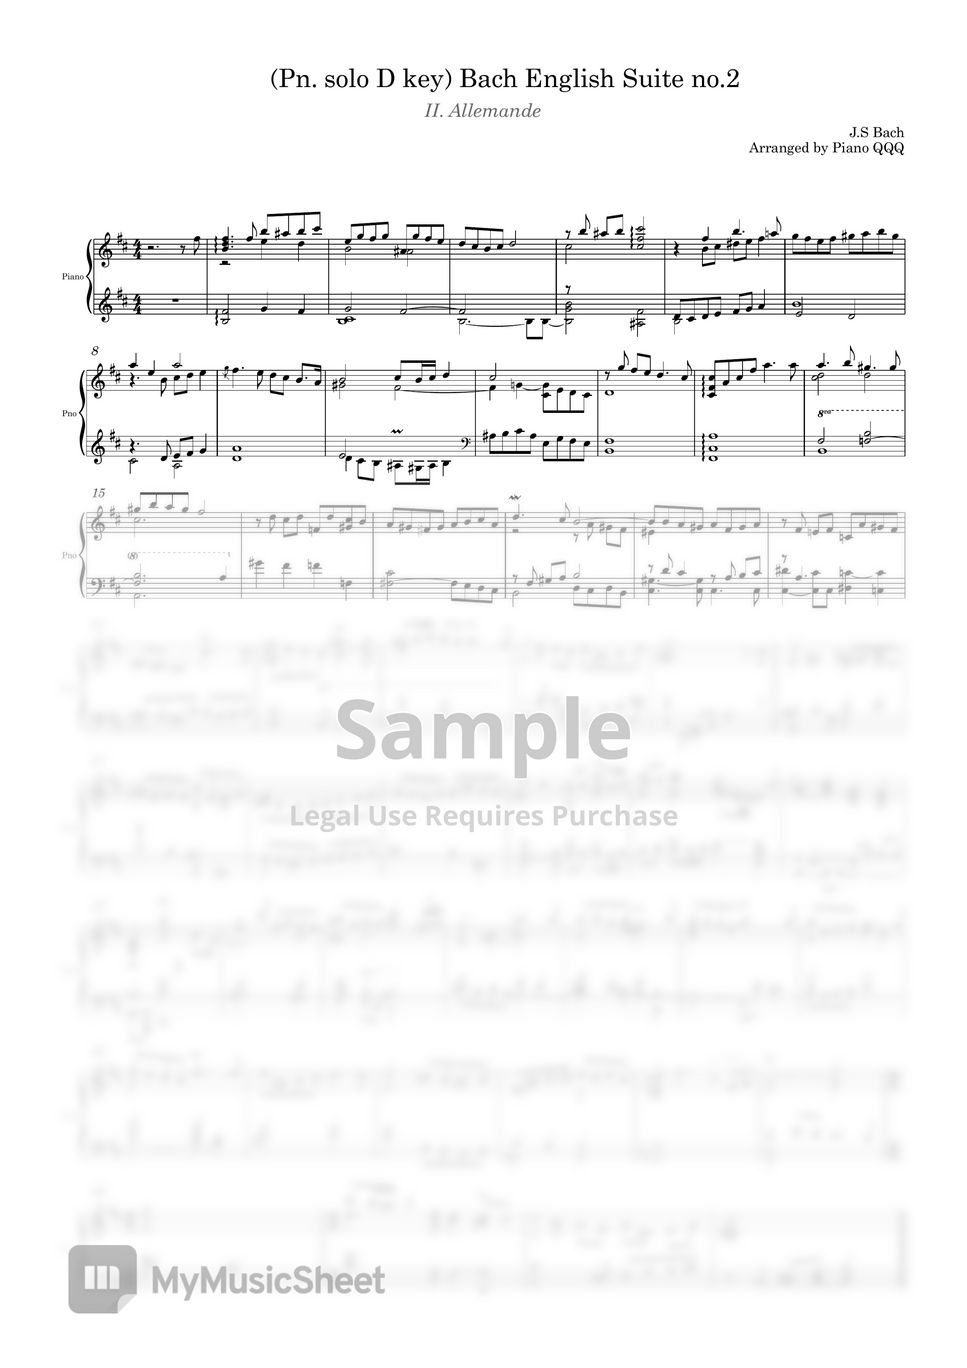 Bach - English Suite no.2 II. allemande (Piano solo) by Piano QQQ